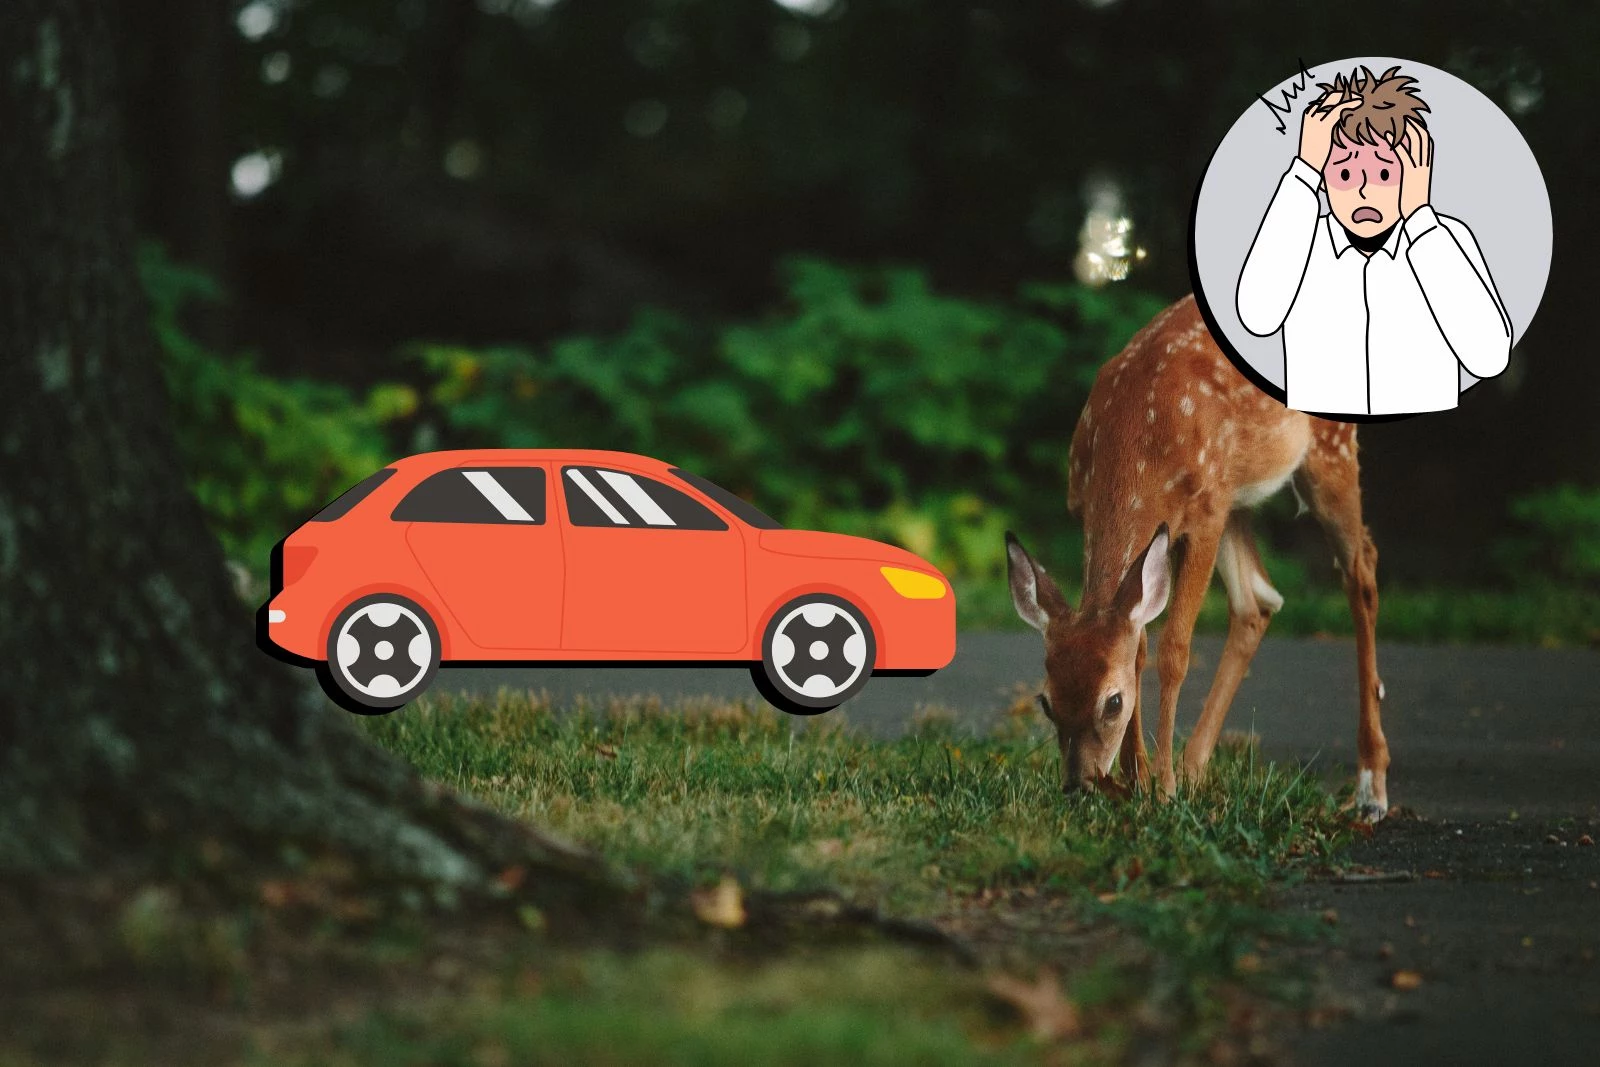 deer hits car driver in south carolina